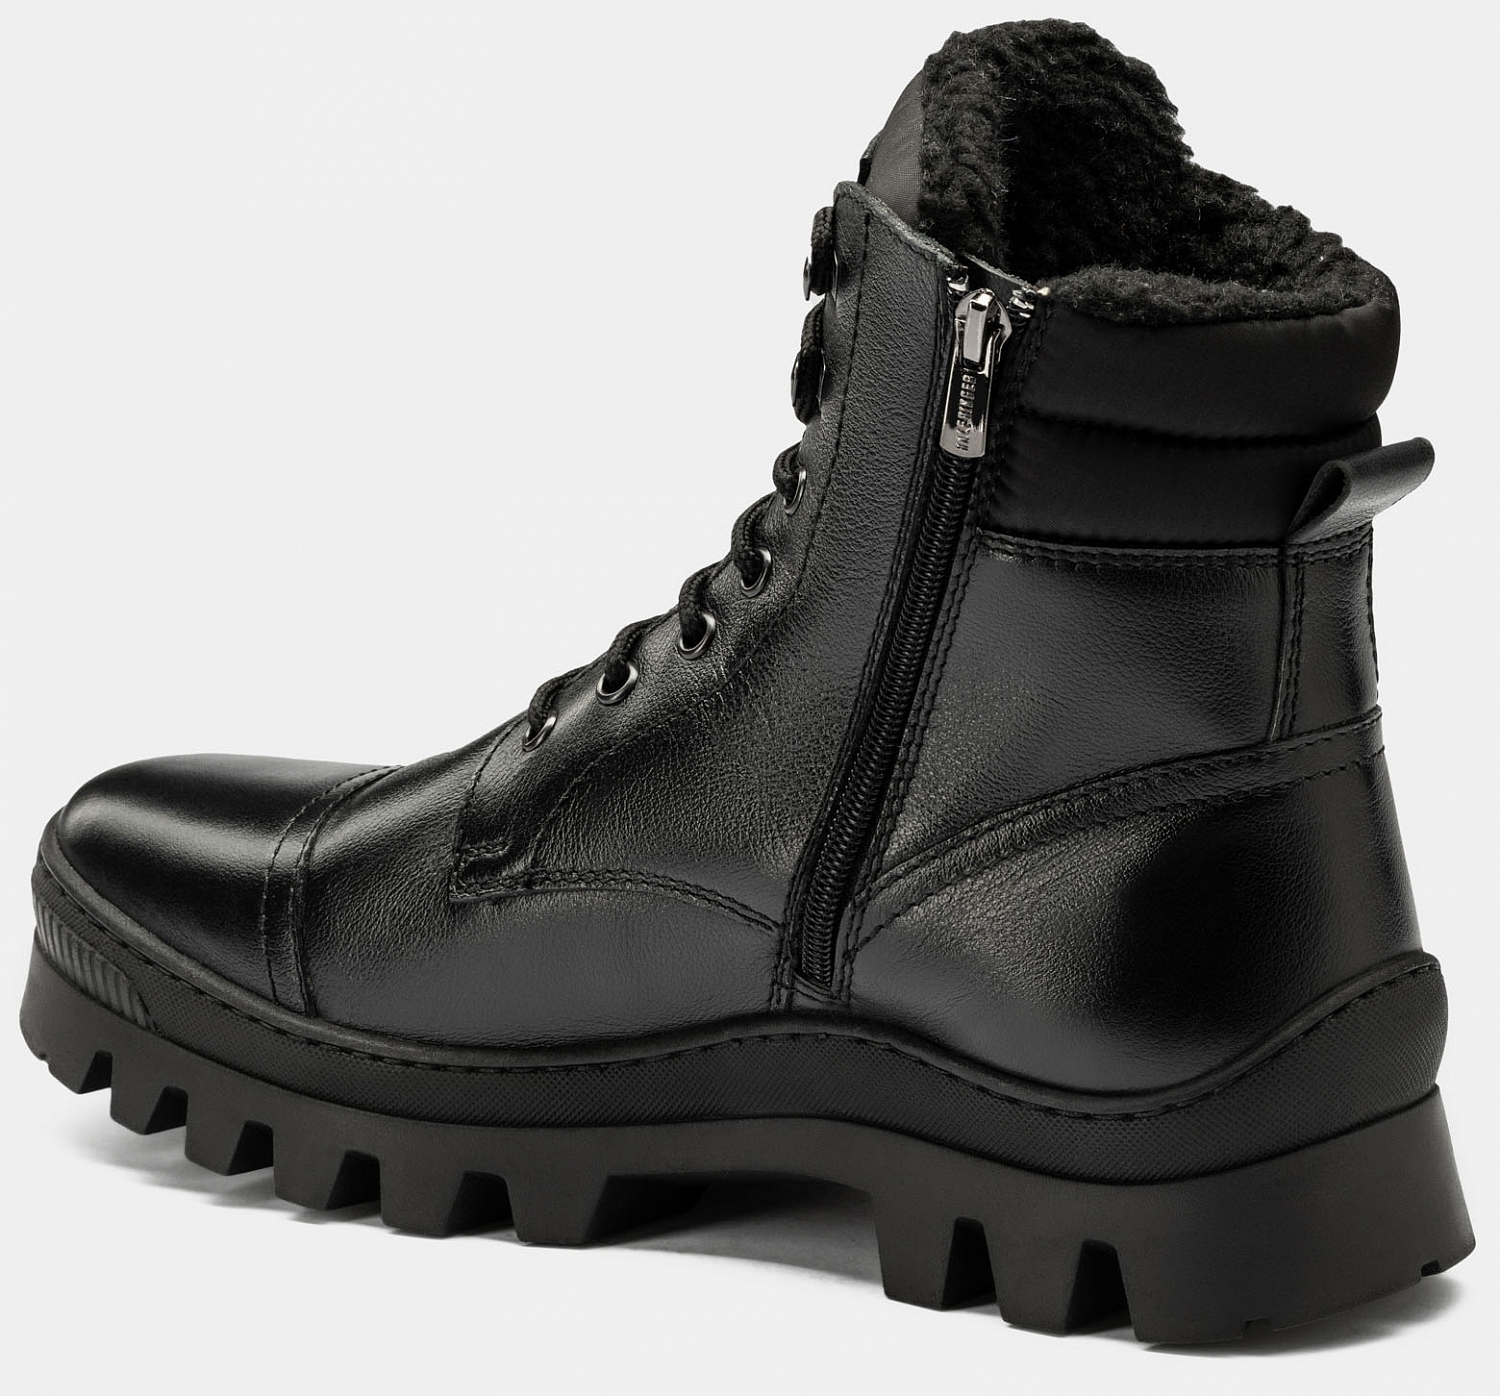 Ботинки мужские CHET (цвет черный, натуральная кожа,текстиль) — купить по  цене 9590 р. в интернет-магазине RALF RINGER | Стильная мужская обувь в  Москве